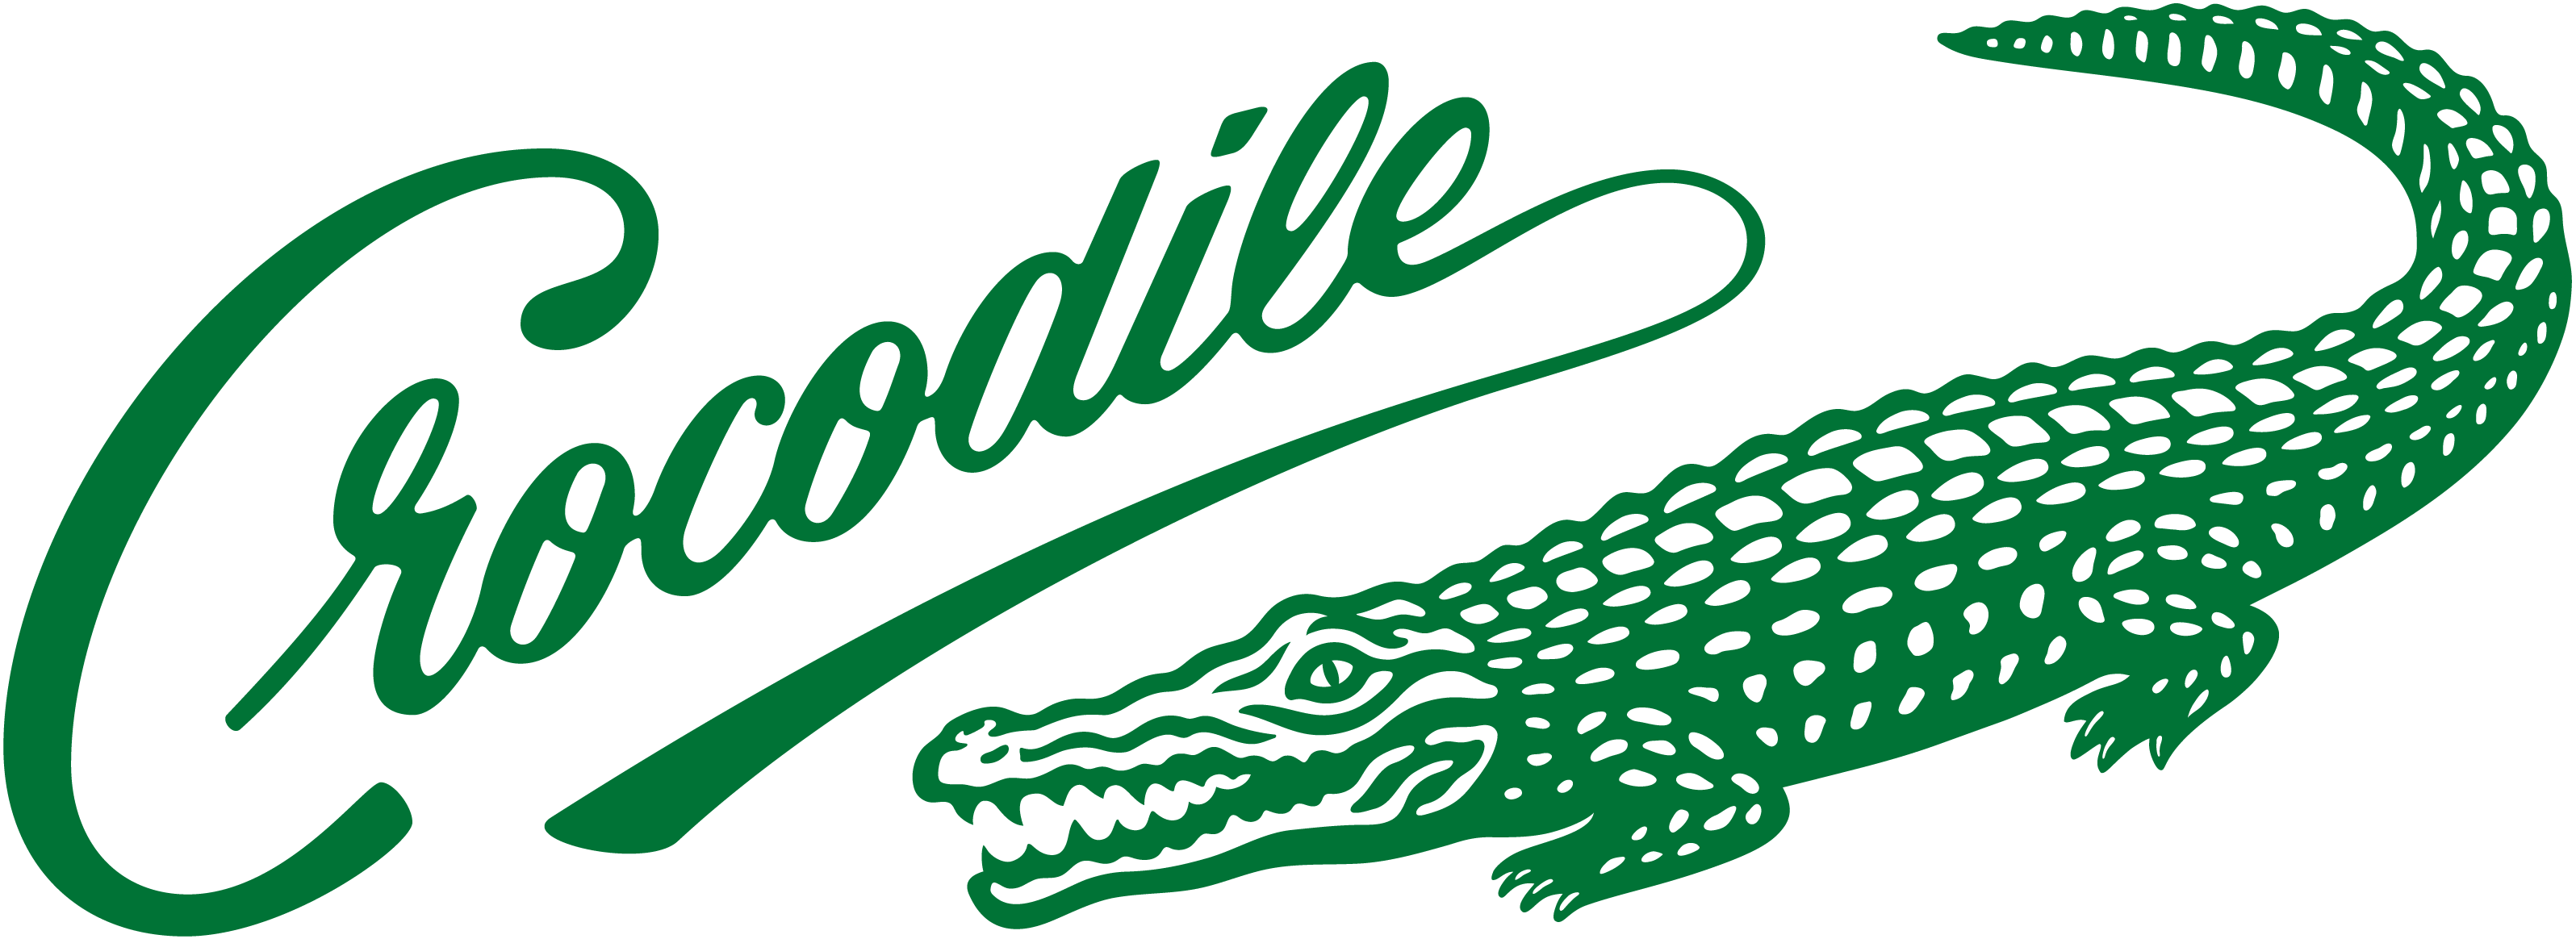 Sejarah Merek Crocodile